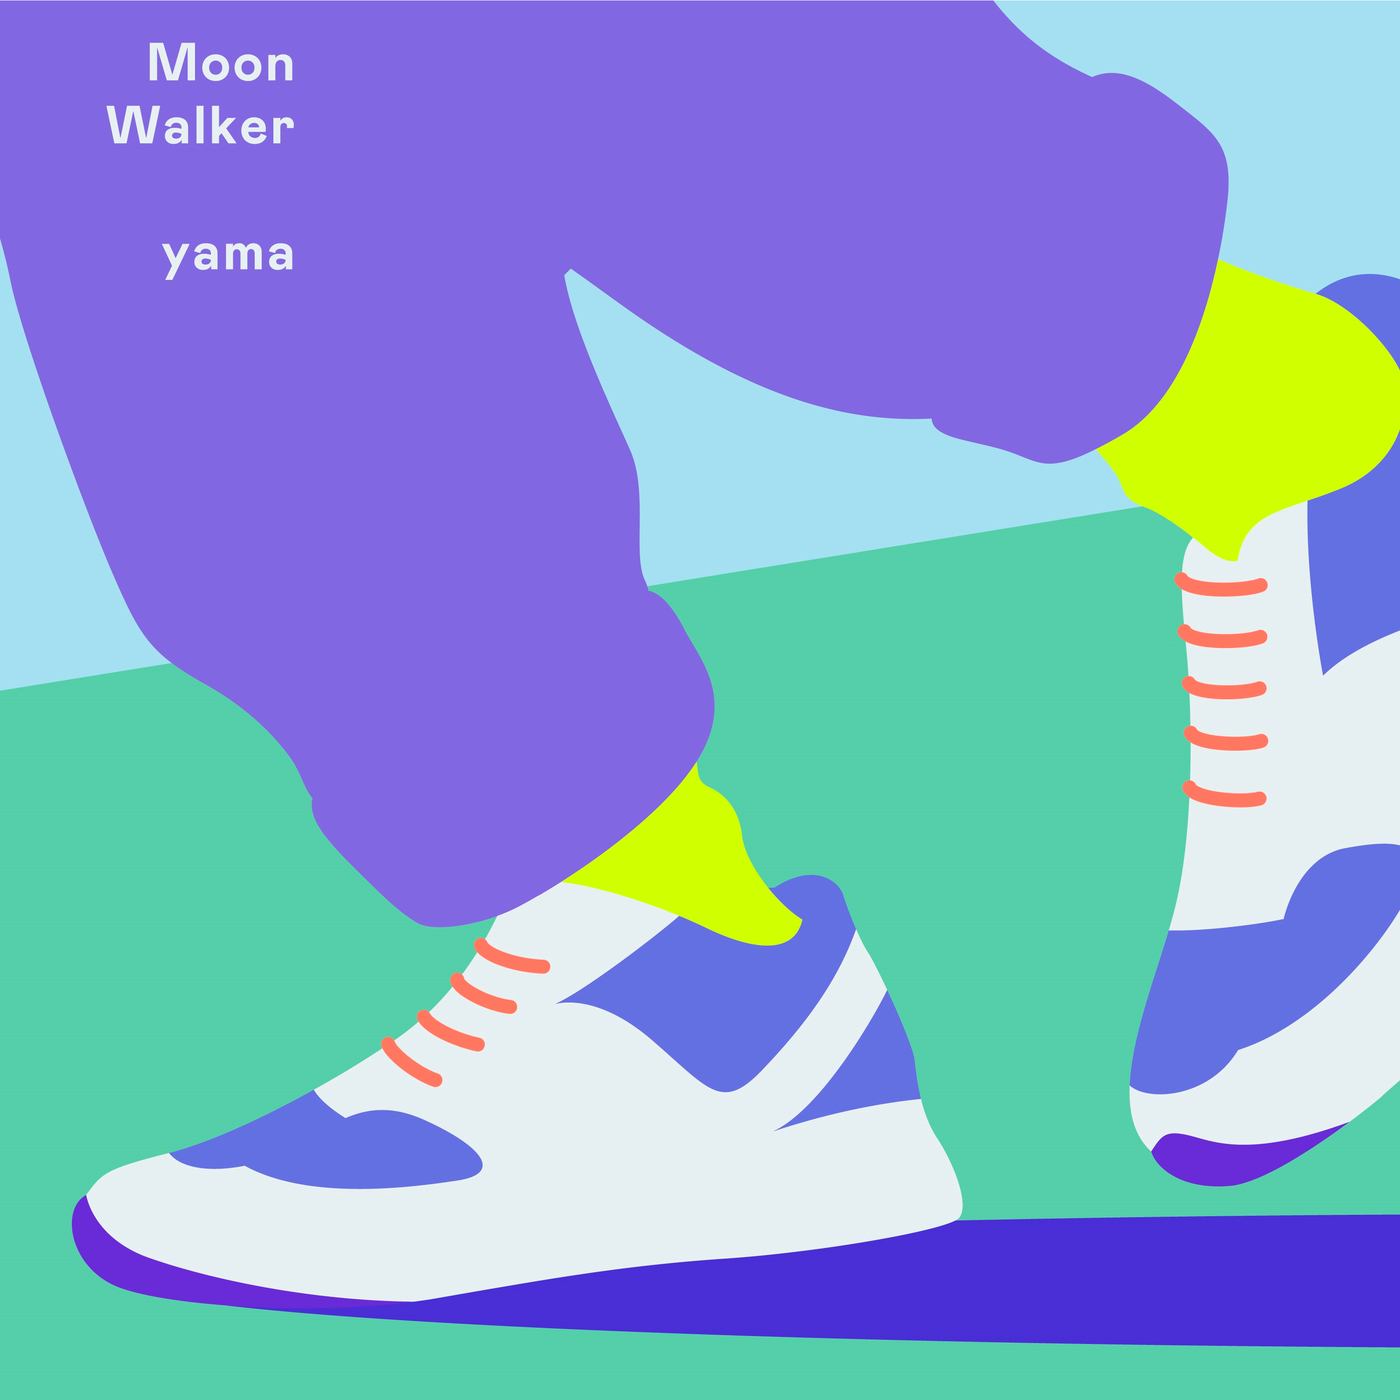 [Hi-Res][220318]yama – MoonWalker「dアニメストア」テレビCM曲[96kHz/24bit][FLAC]插图icecomic动漫-云之彼端,约定的地方(´･ᴗ･`)